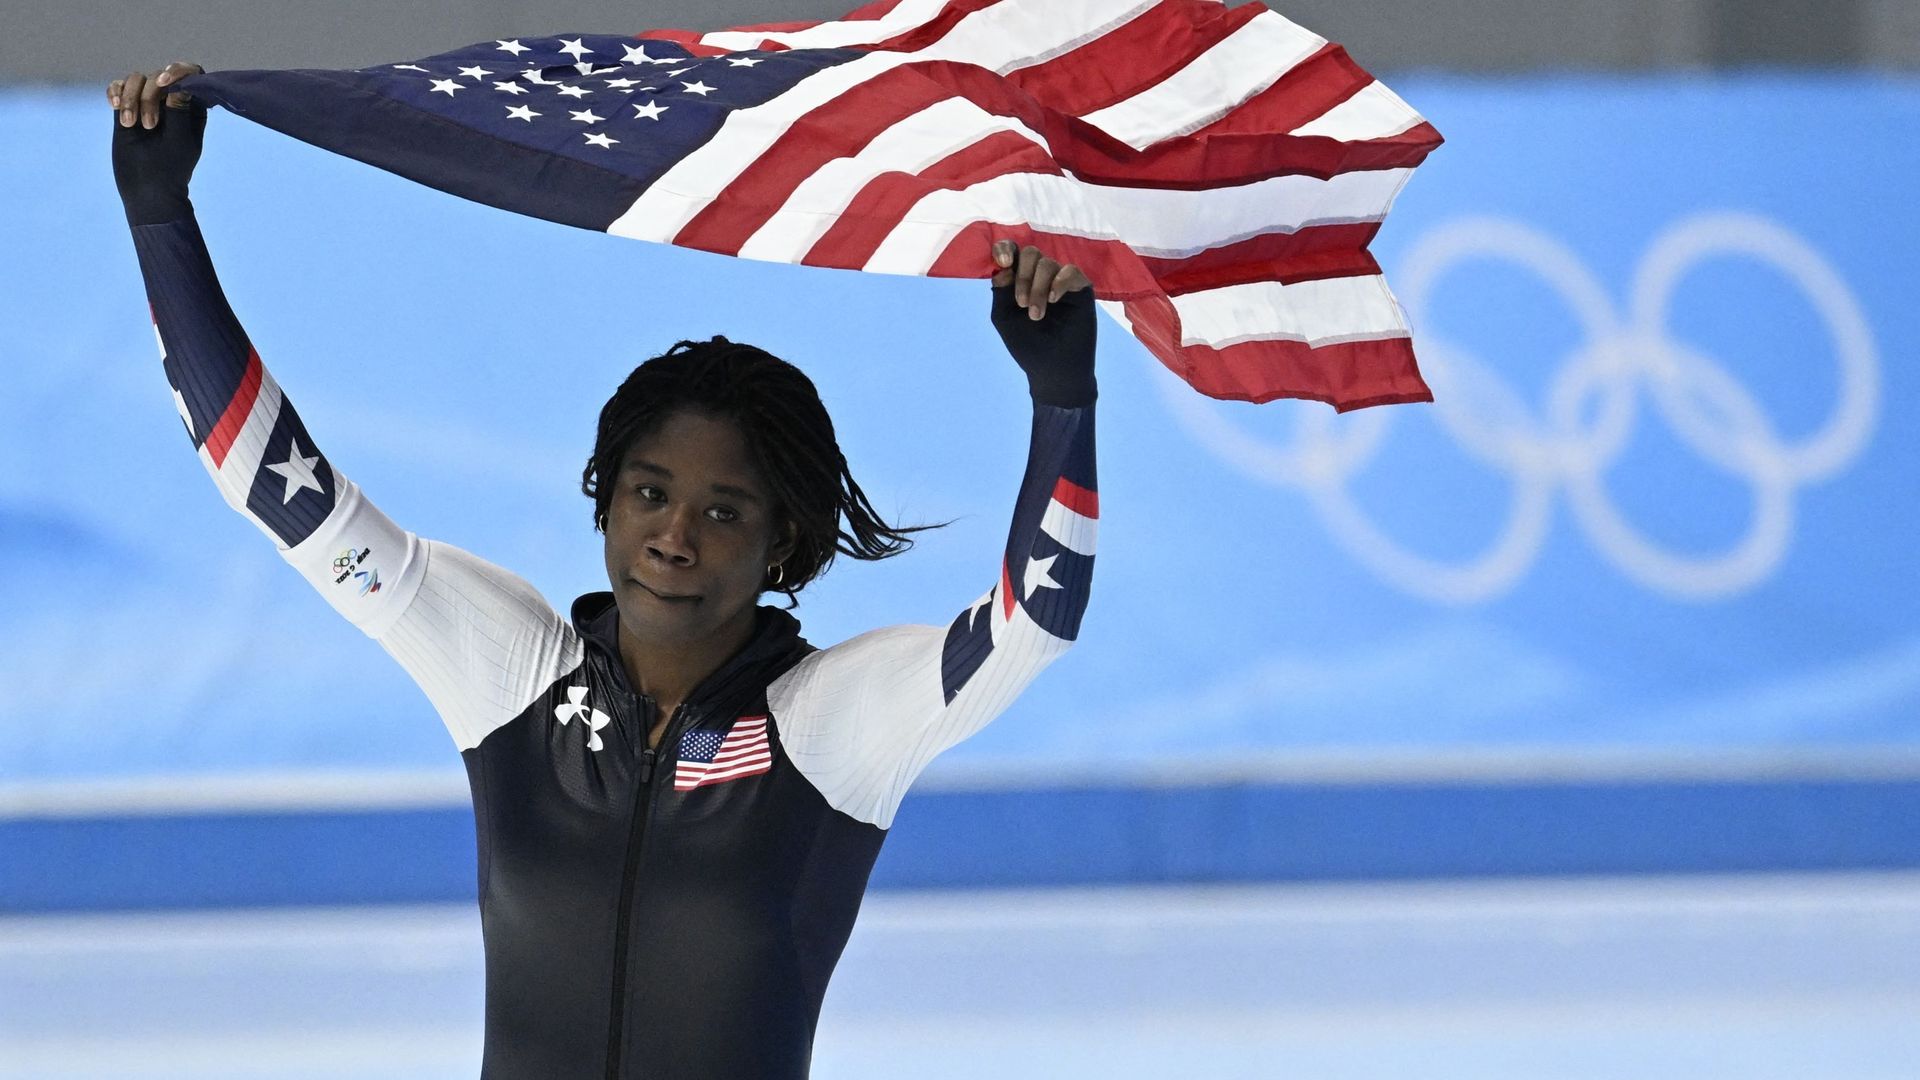 Erin Jackson célèbre sa victoire, faisant flotter le drapeau américain au-dessus de sa tête.